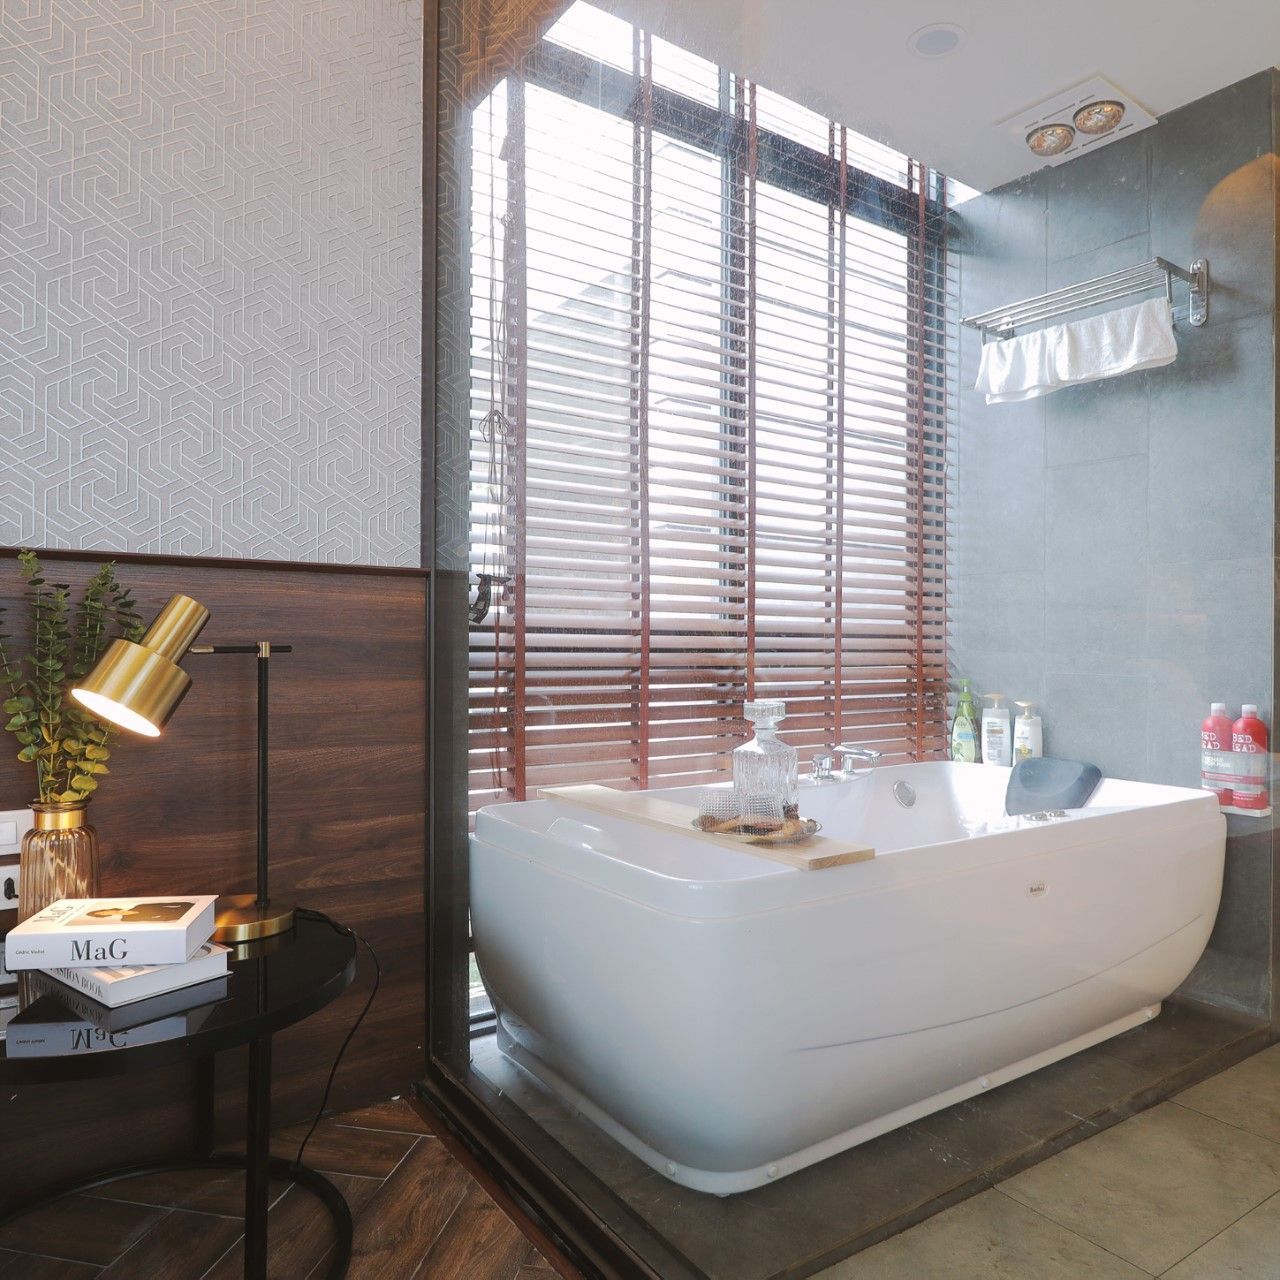 Nội thất phòng tắm cao cấp sử dụng rèm gỗ được tối ưu ánh sáng từ cửa sổ lớn